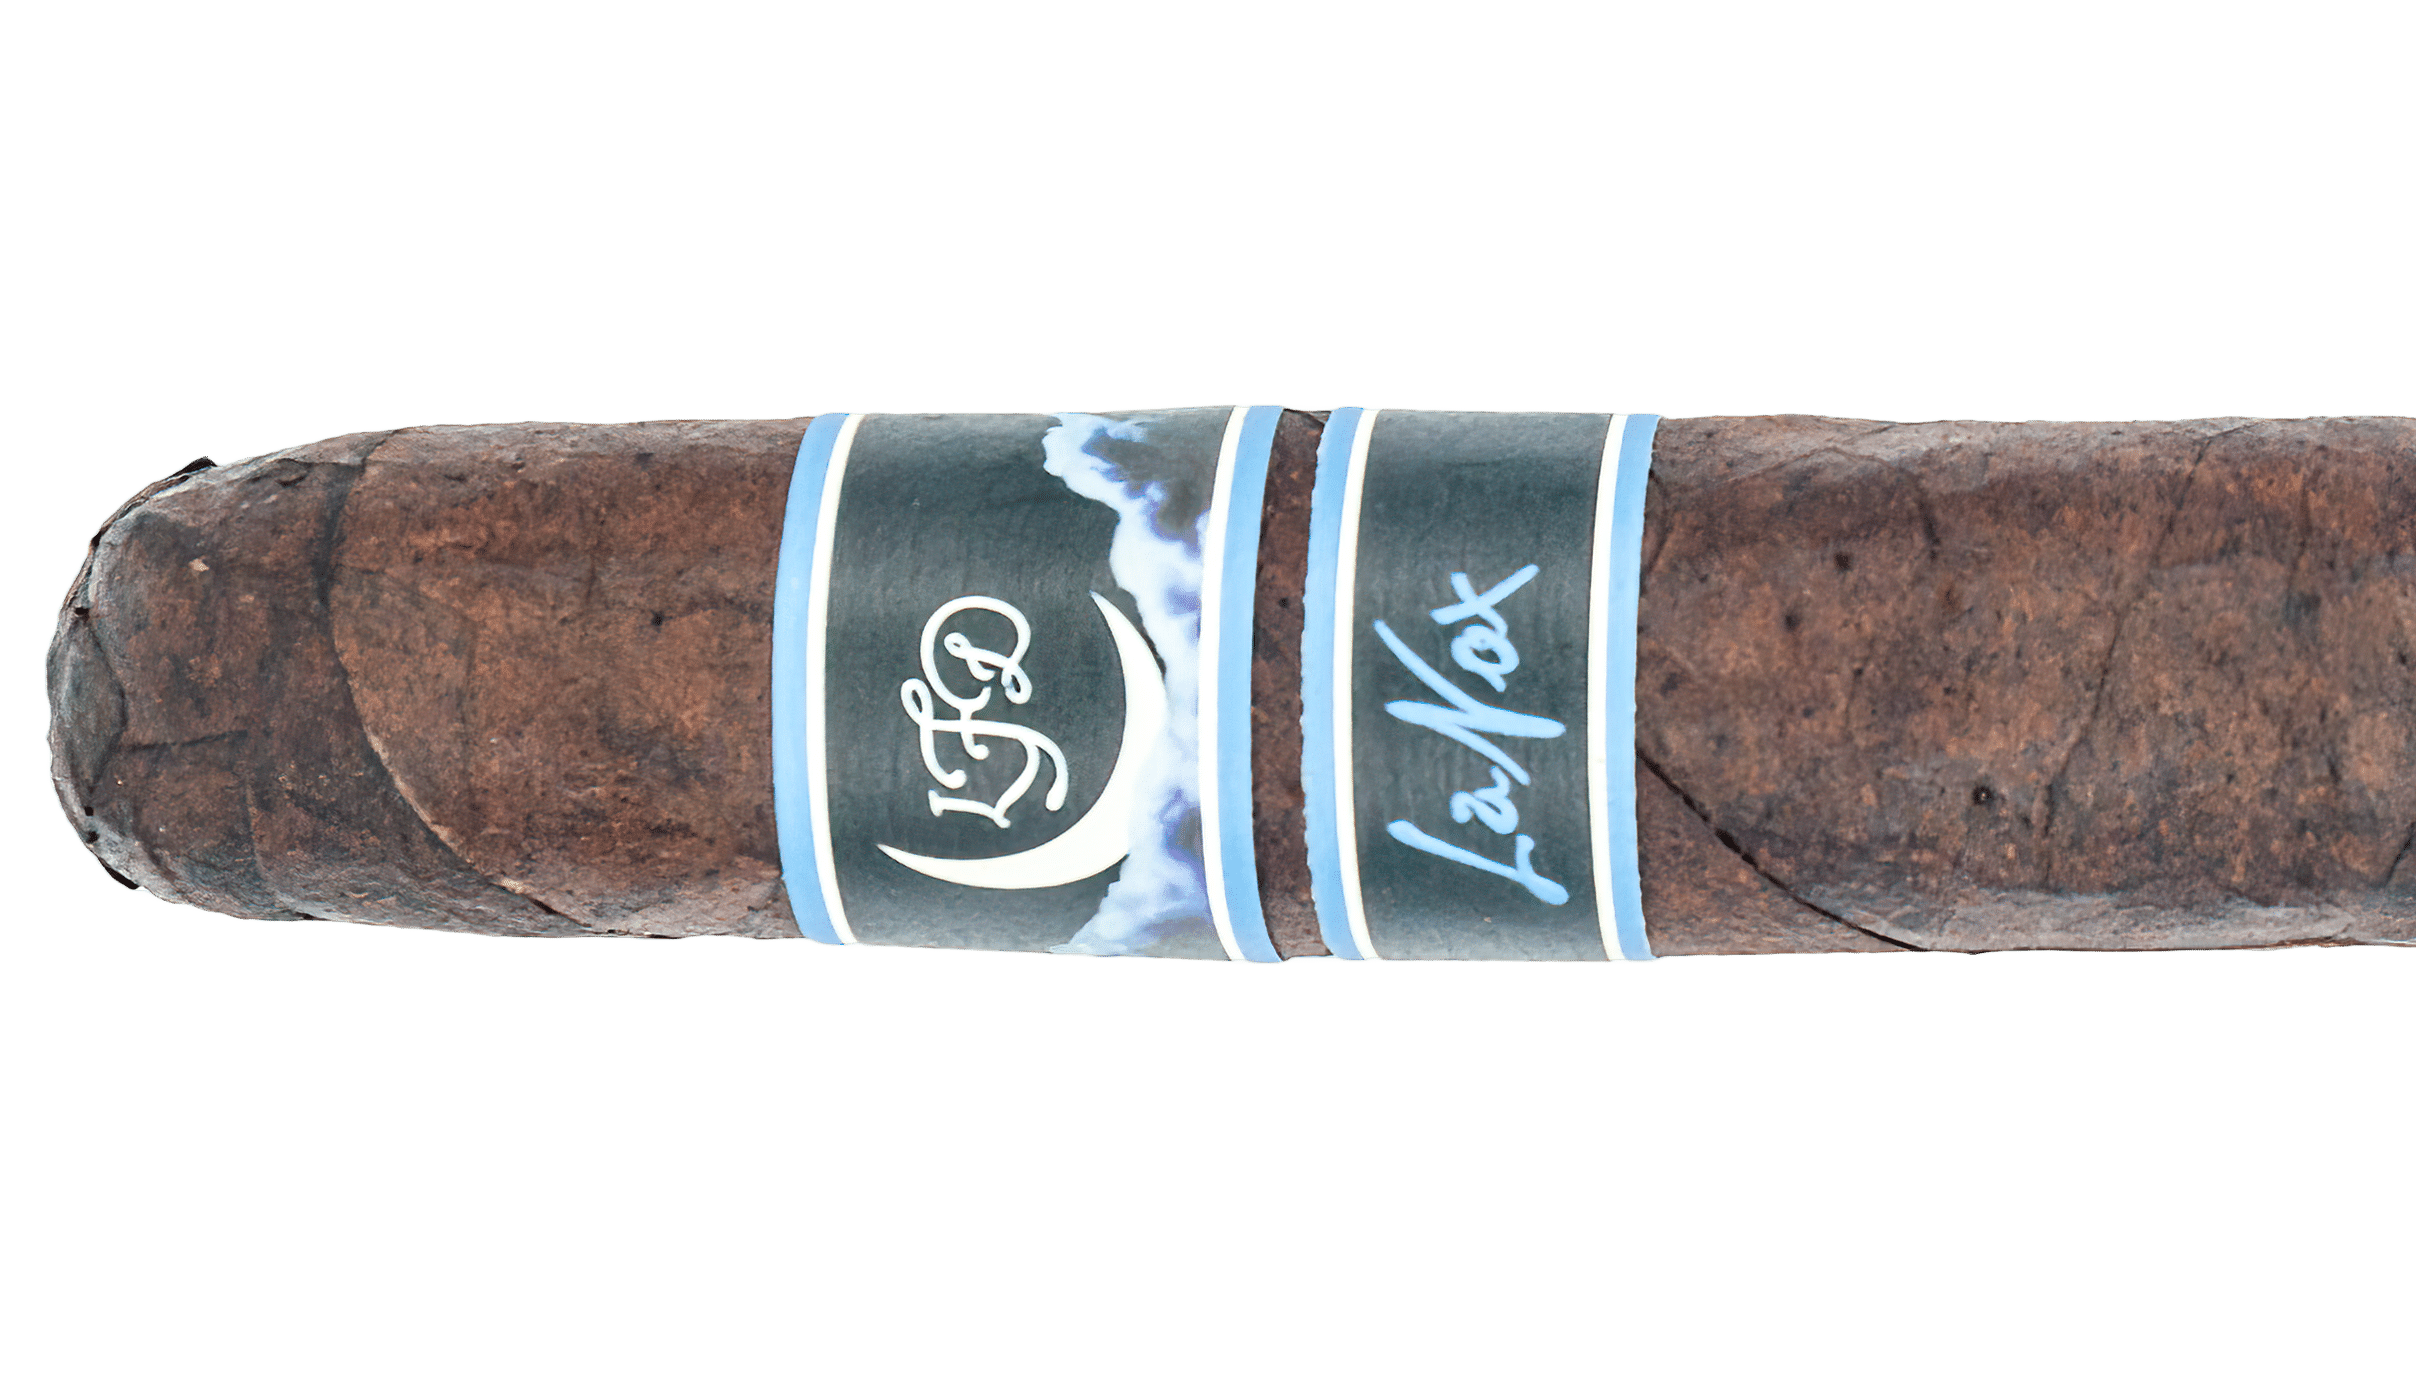 La Flor Dominicana La Nox Toro - Blind Cigar Review